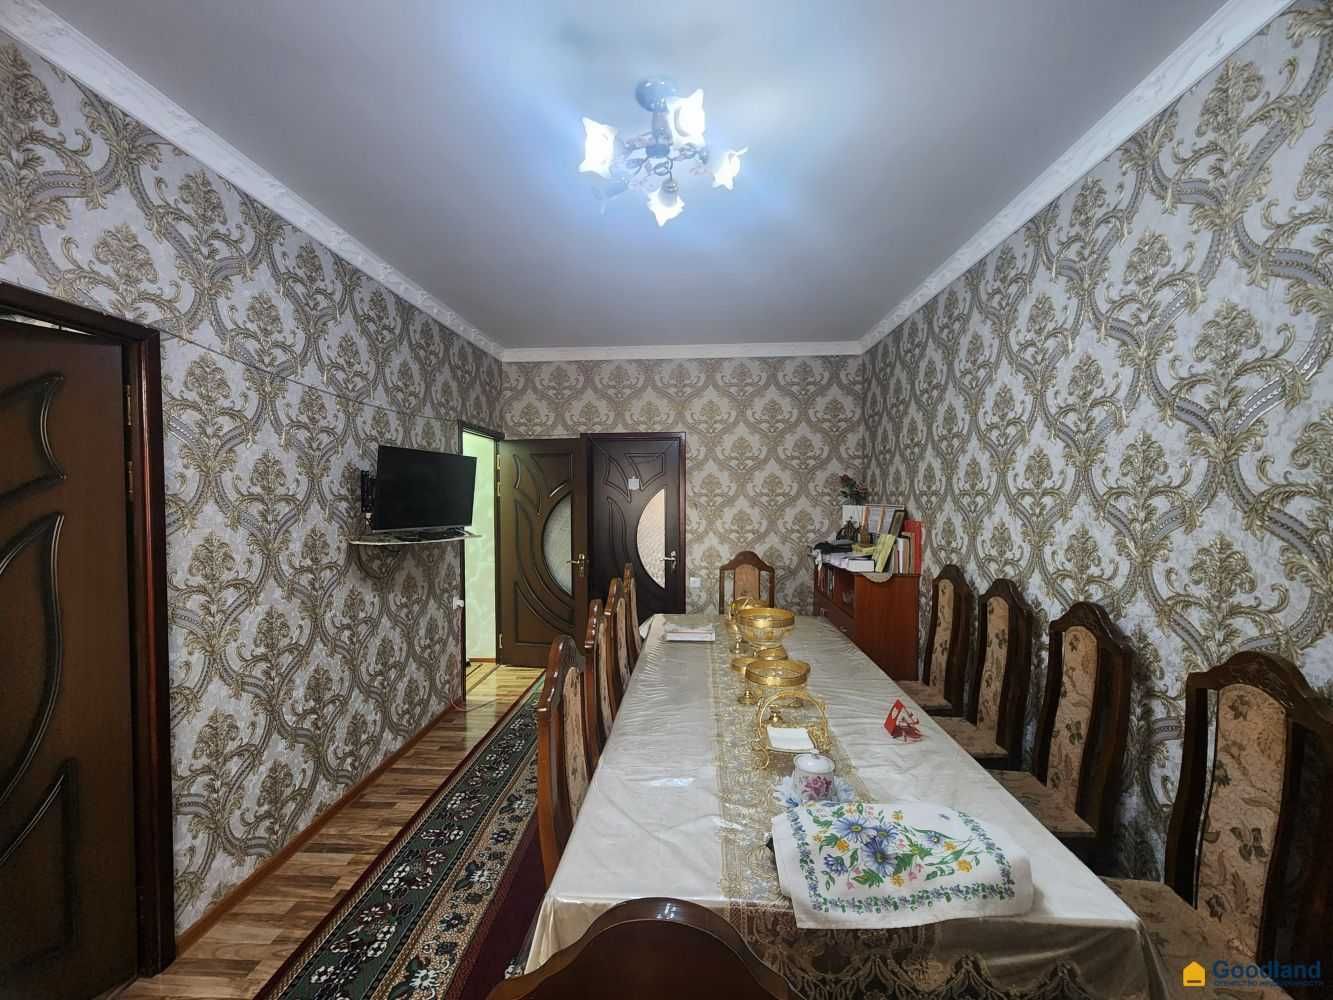 Продаётся 2 ком квартира в Мирабадском р-не 1 кв! Ипотека есть (J1779)